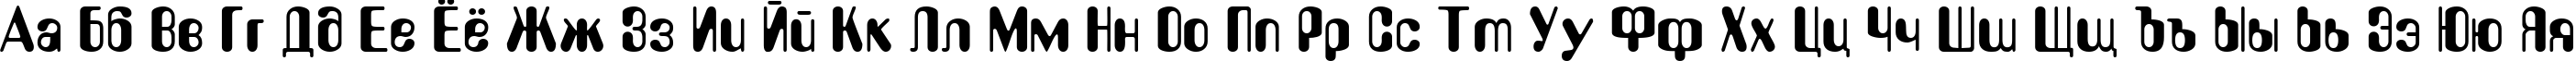 Пример написания русского алфавита шрифтом LidaDi